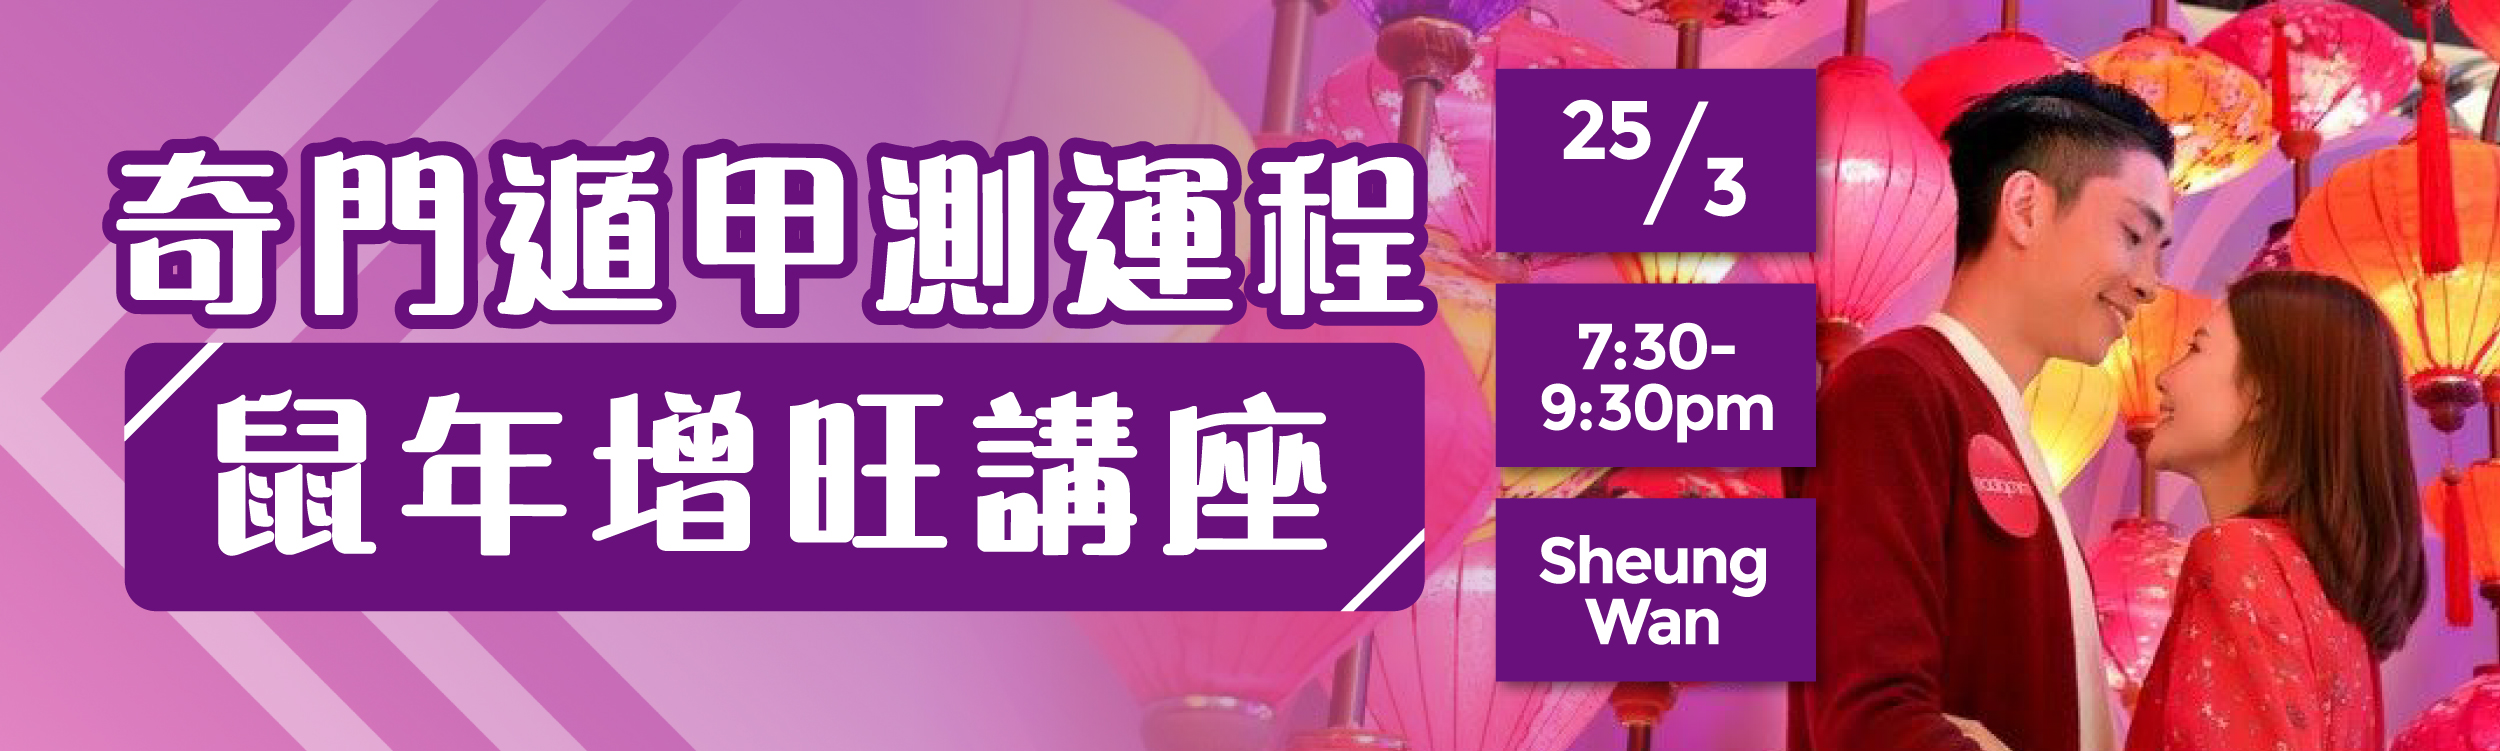 (完滿舉行)奇門遁甲測運程 + 鼠年增旺講座 - 2020年3月25日(星期三) 香港交友約會業協會 Hong Kong Speed Dating Federation - Speed Dating , 一對一約會, 單對單約會, 約會行業, 約會配對